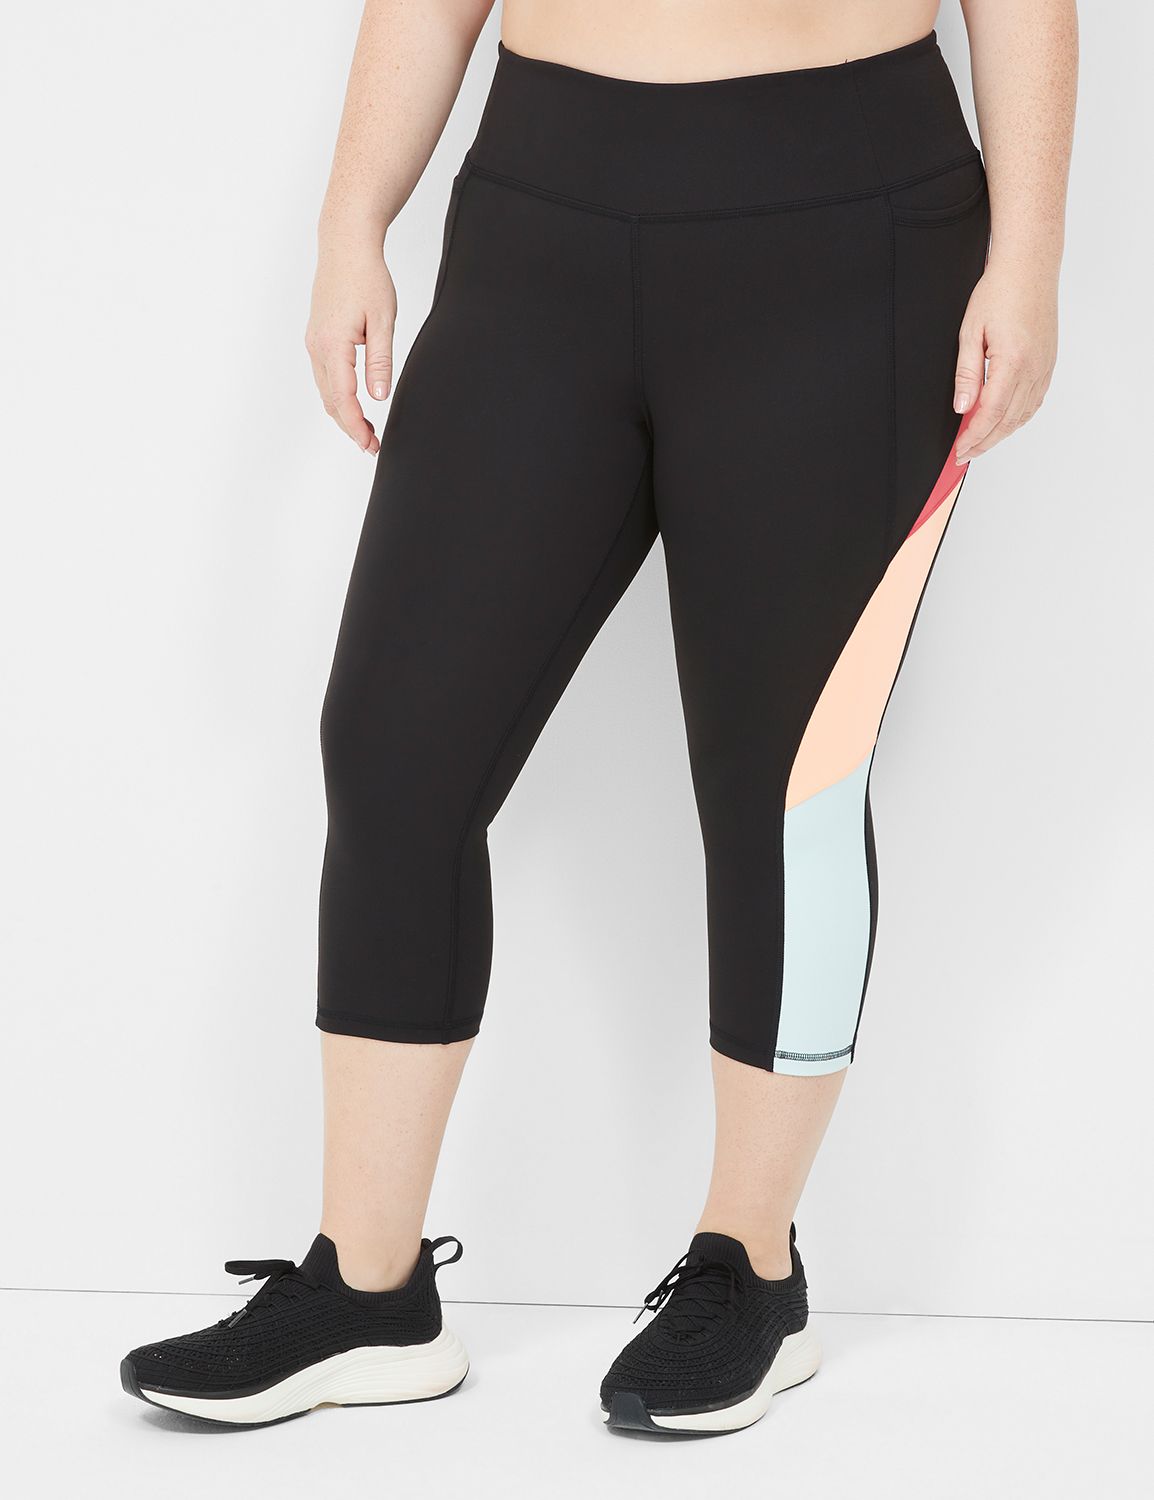 Size 22-24 Plus Size Yoga Pants & Active Bottoms